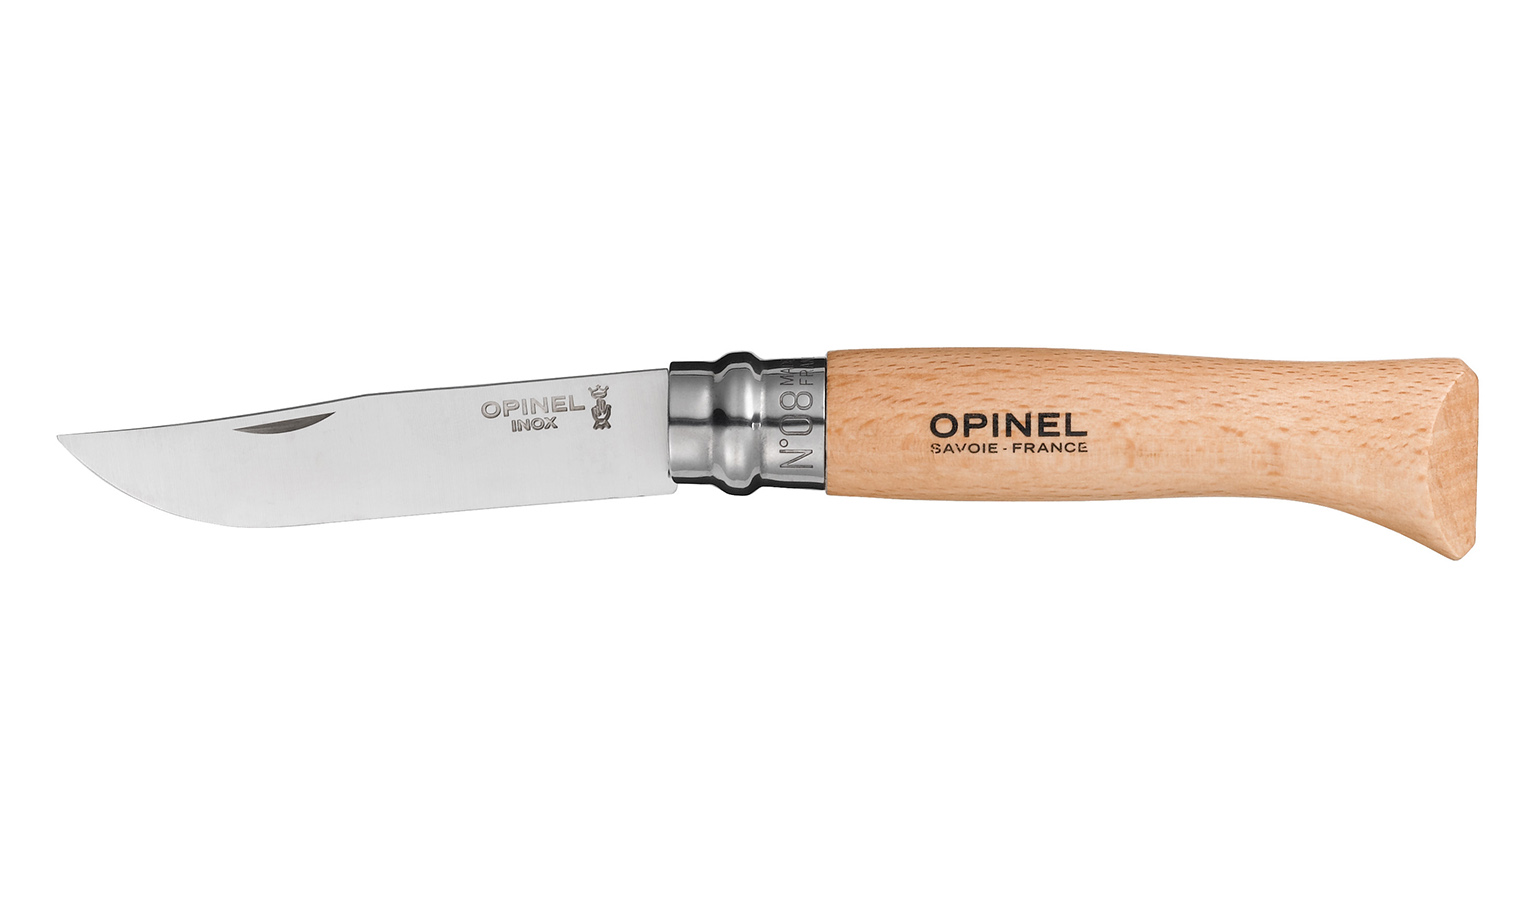 Opinel knife model virobloc n.8 stainless steel blade mm.85